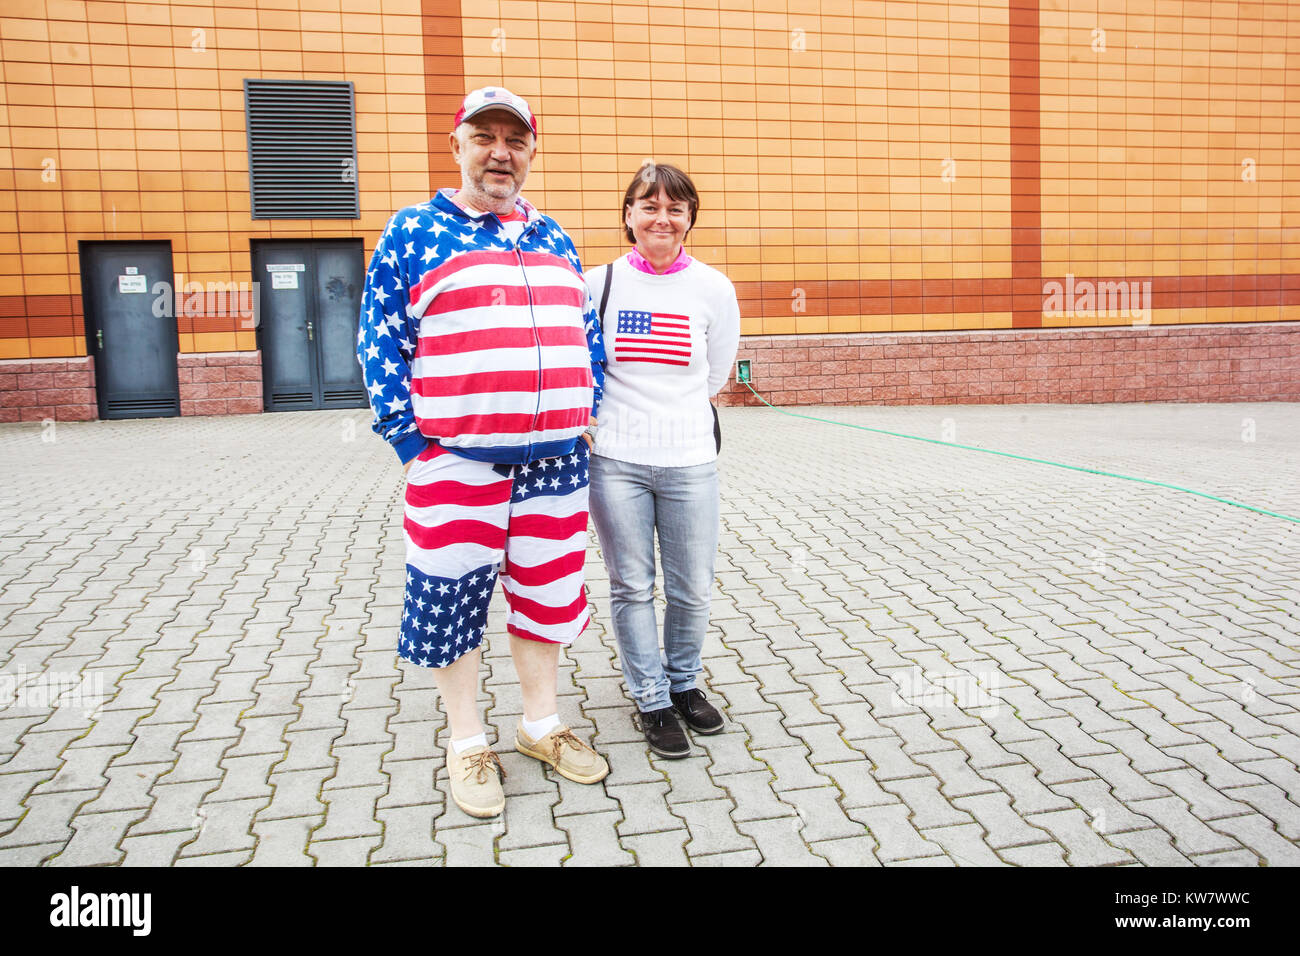 Paar in US-Farben, Sternen und Streifen gekleidet während der Befreiung der Stadt durch das US-Militär, Pilsen, Tschechische Republik Menschen Stockfoto